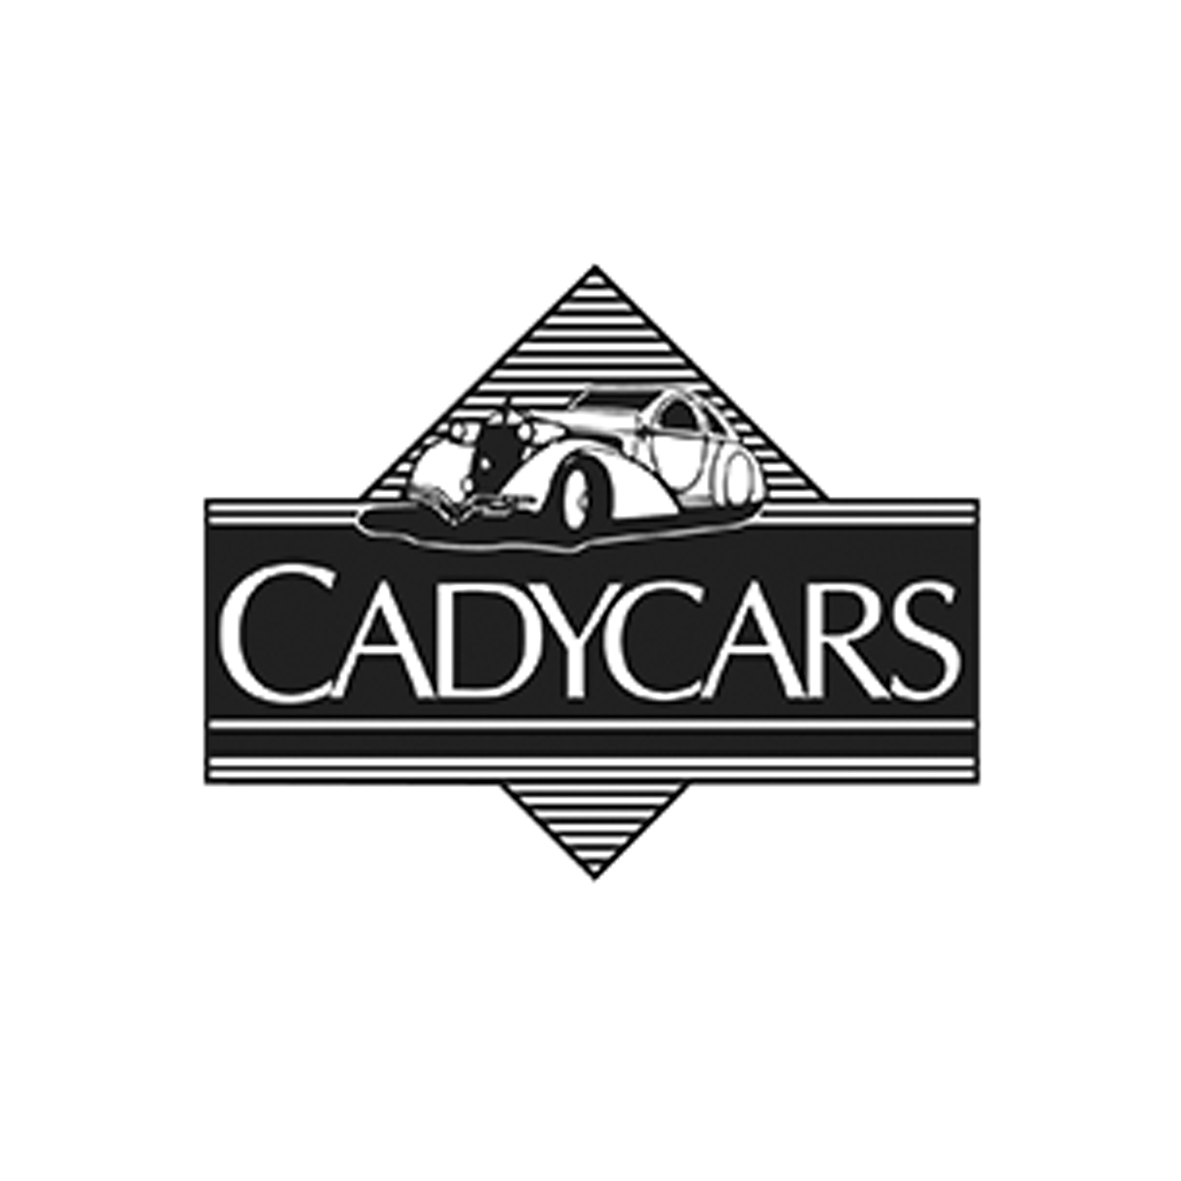 CadyCars